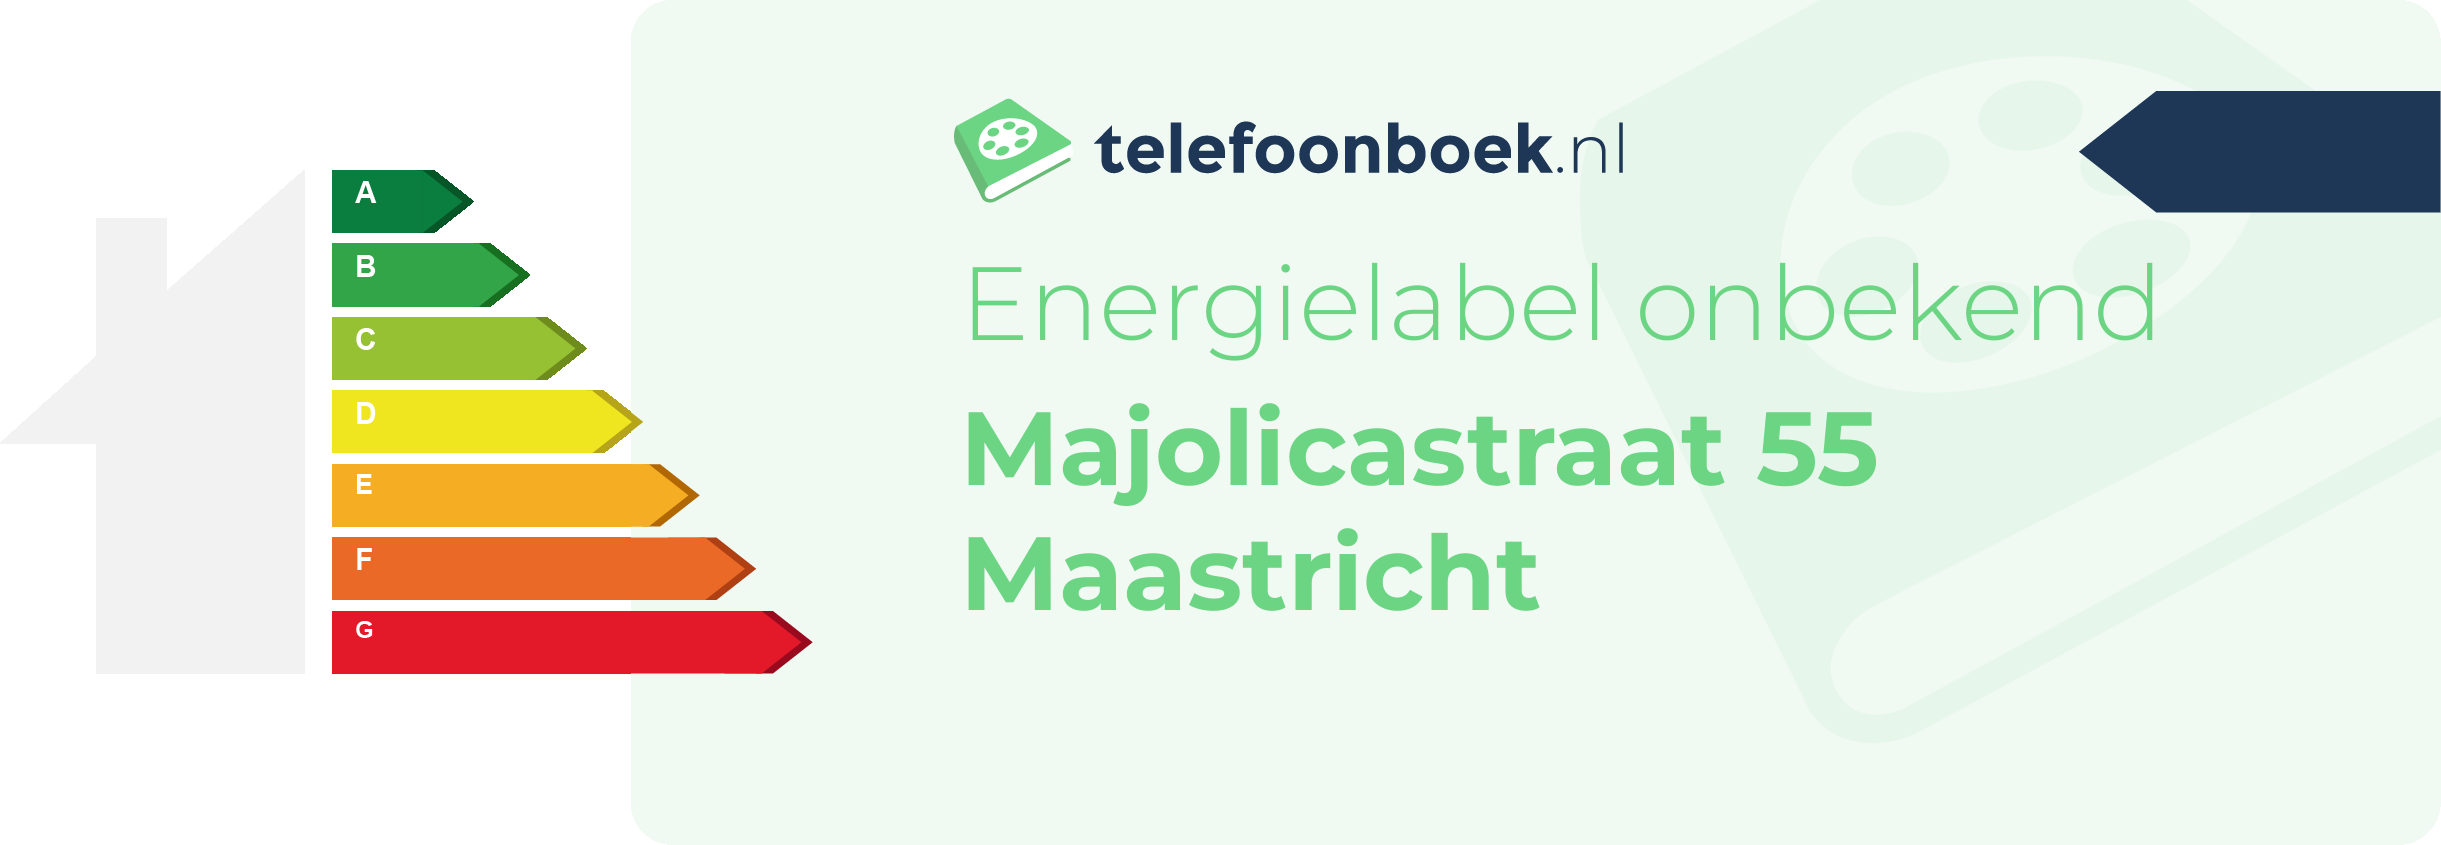 Energielabel Majolicastraat 55 Maastricht